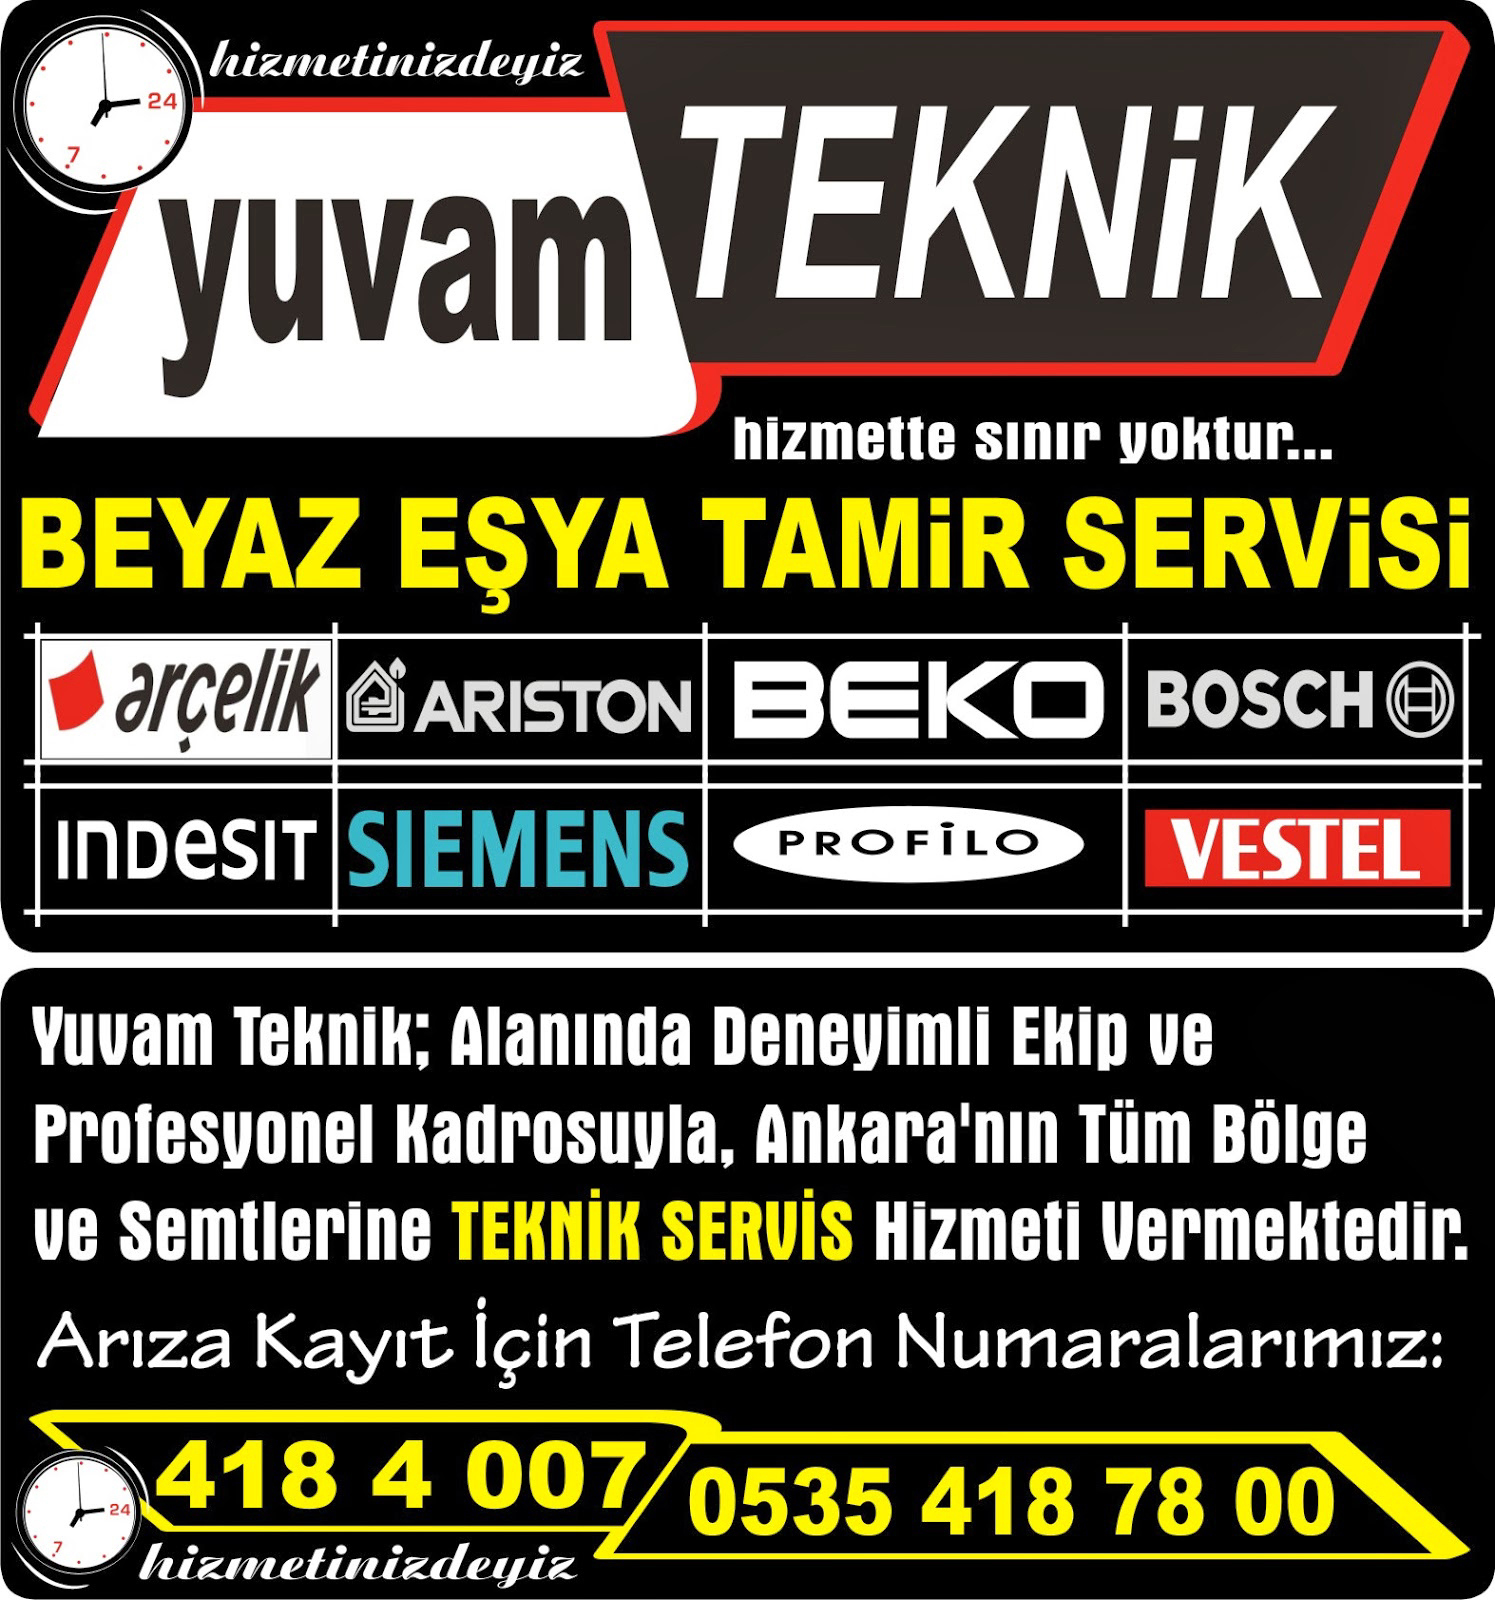 Beko Servis Ankara Balgat